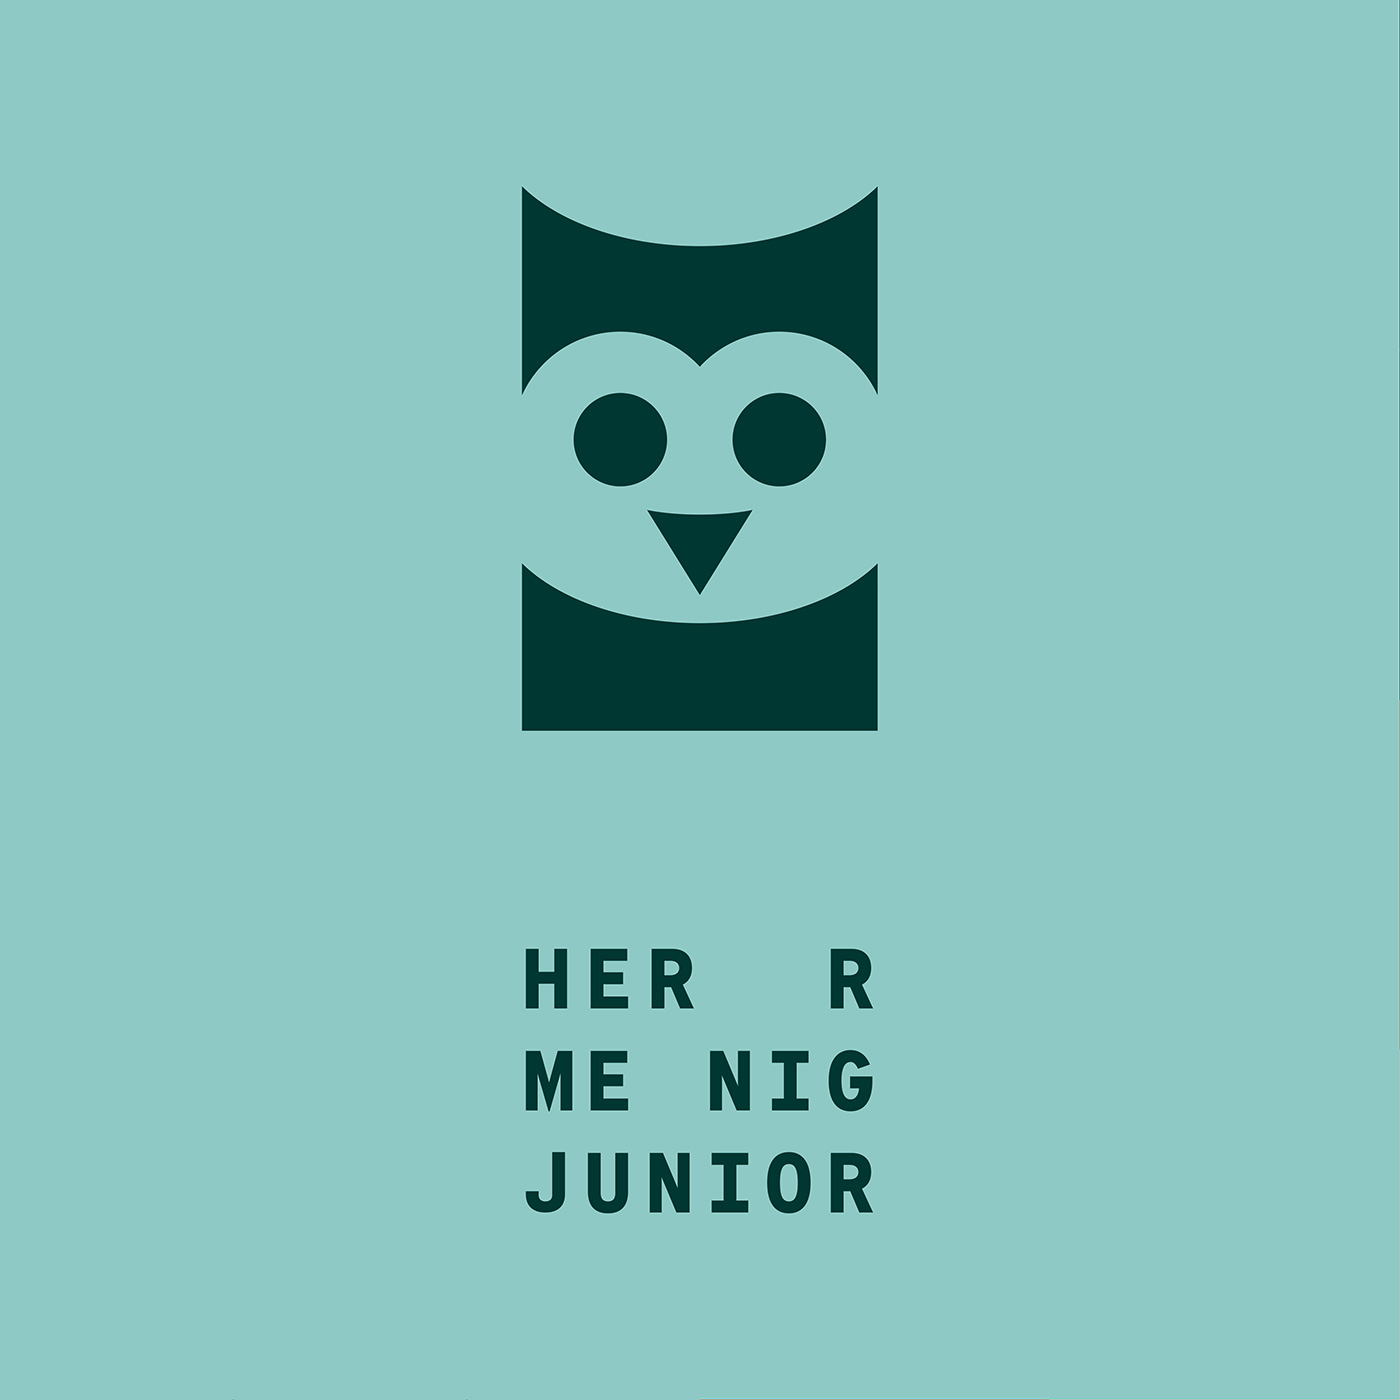 Herr Menig Junior logo